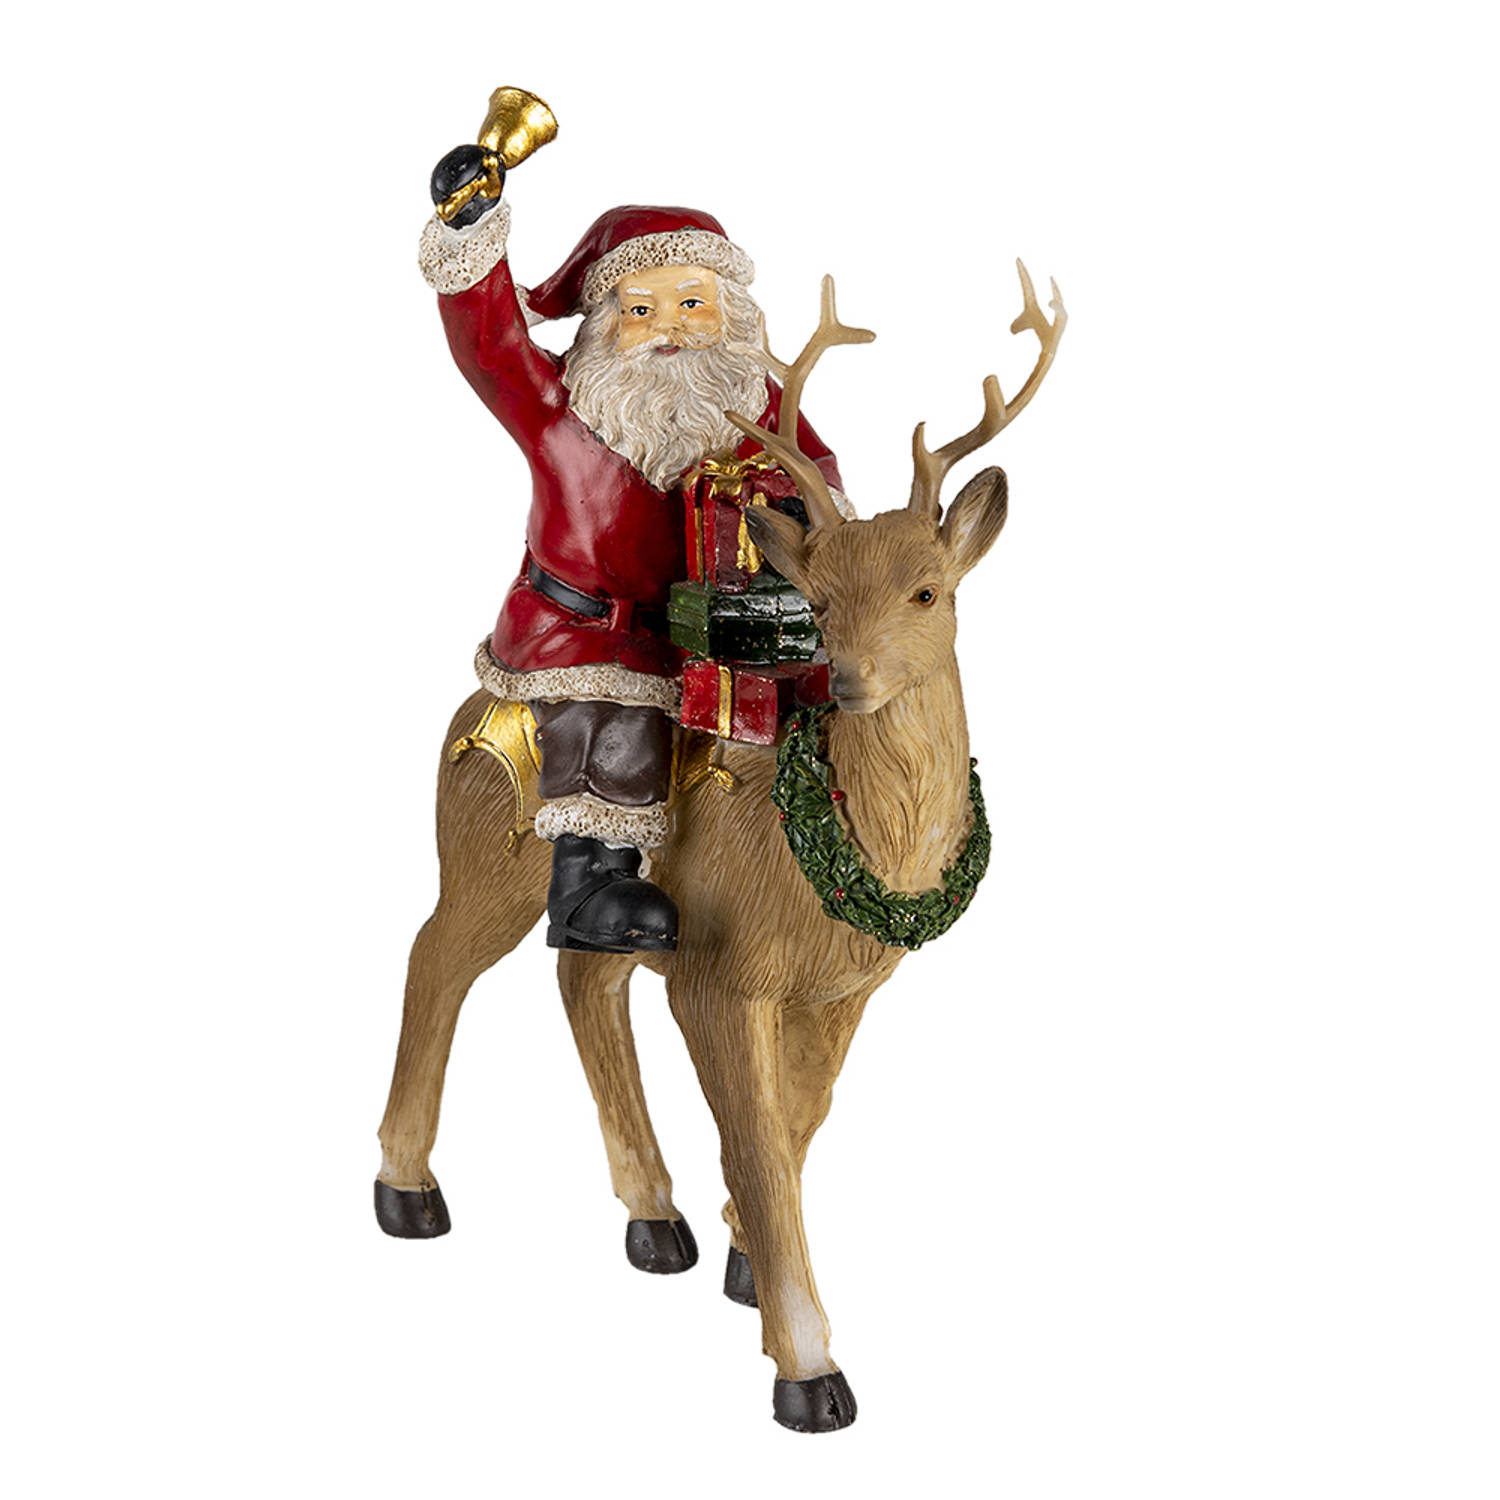 HAES DECO - Kerstman deco Figuur - Formaat 16x9x22 cm - Kleur Rood - Materiaal Polyresin - Kerst Figuur, Kerstdecoratie